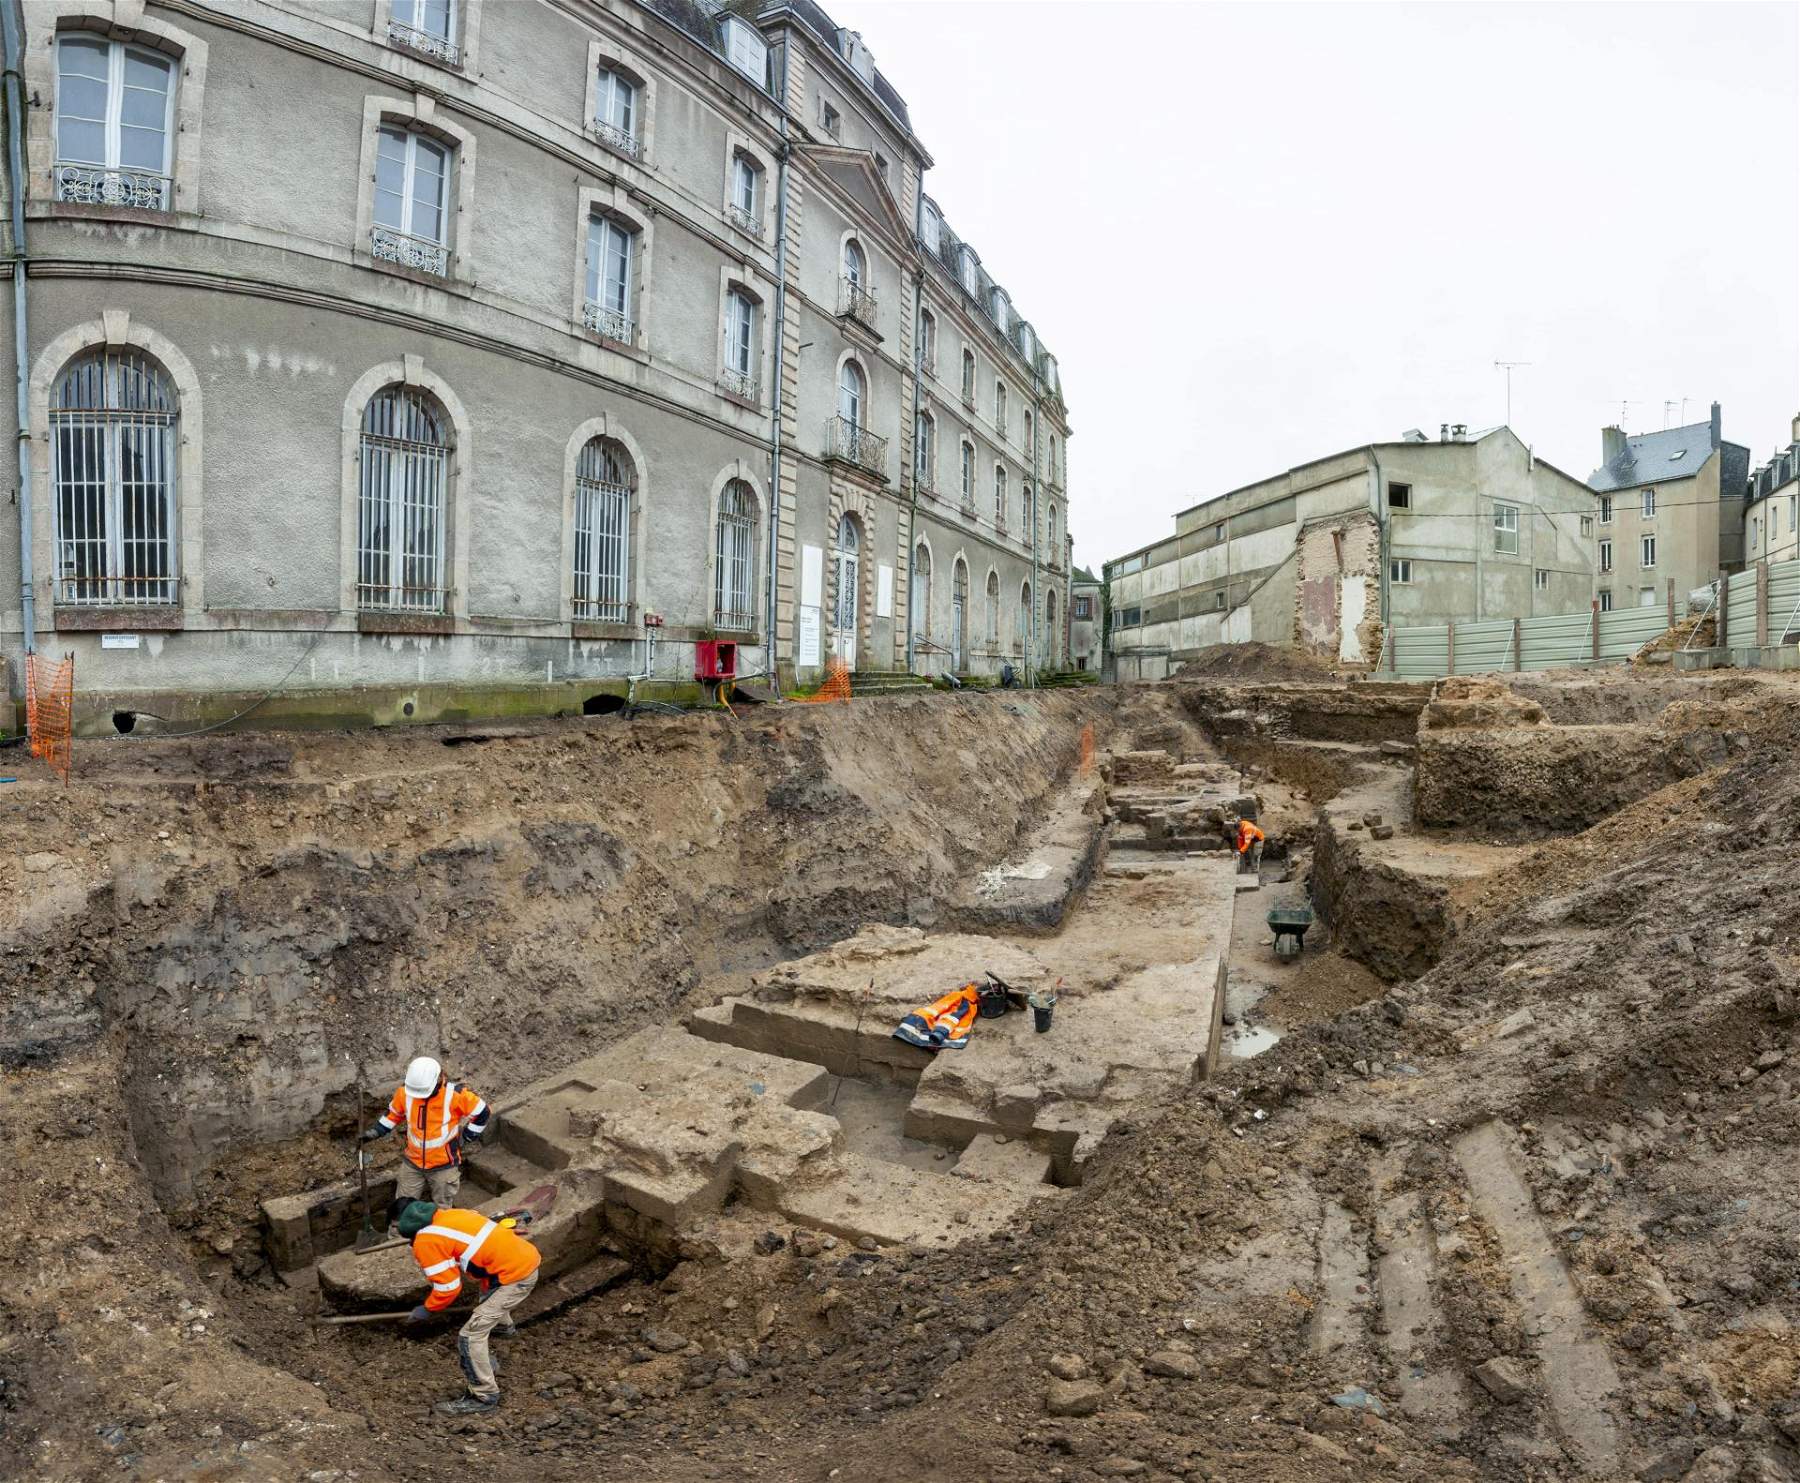 France, à Vannes, des archéologues découvrent un château médiéval sous une maison du XVIIIe siècle